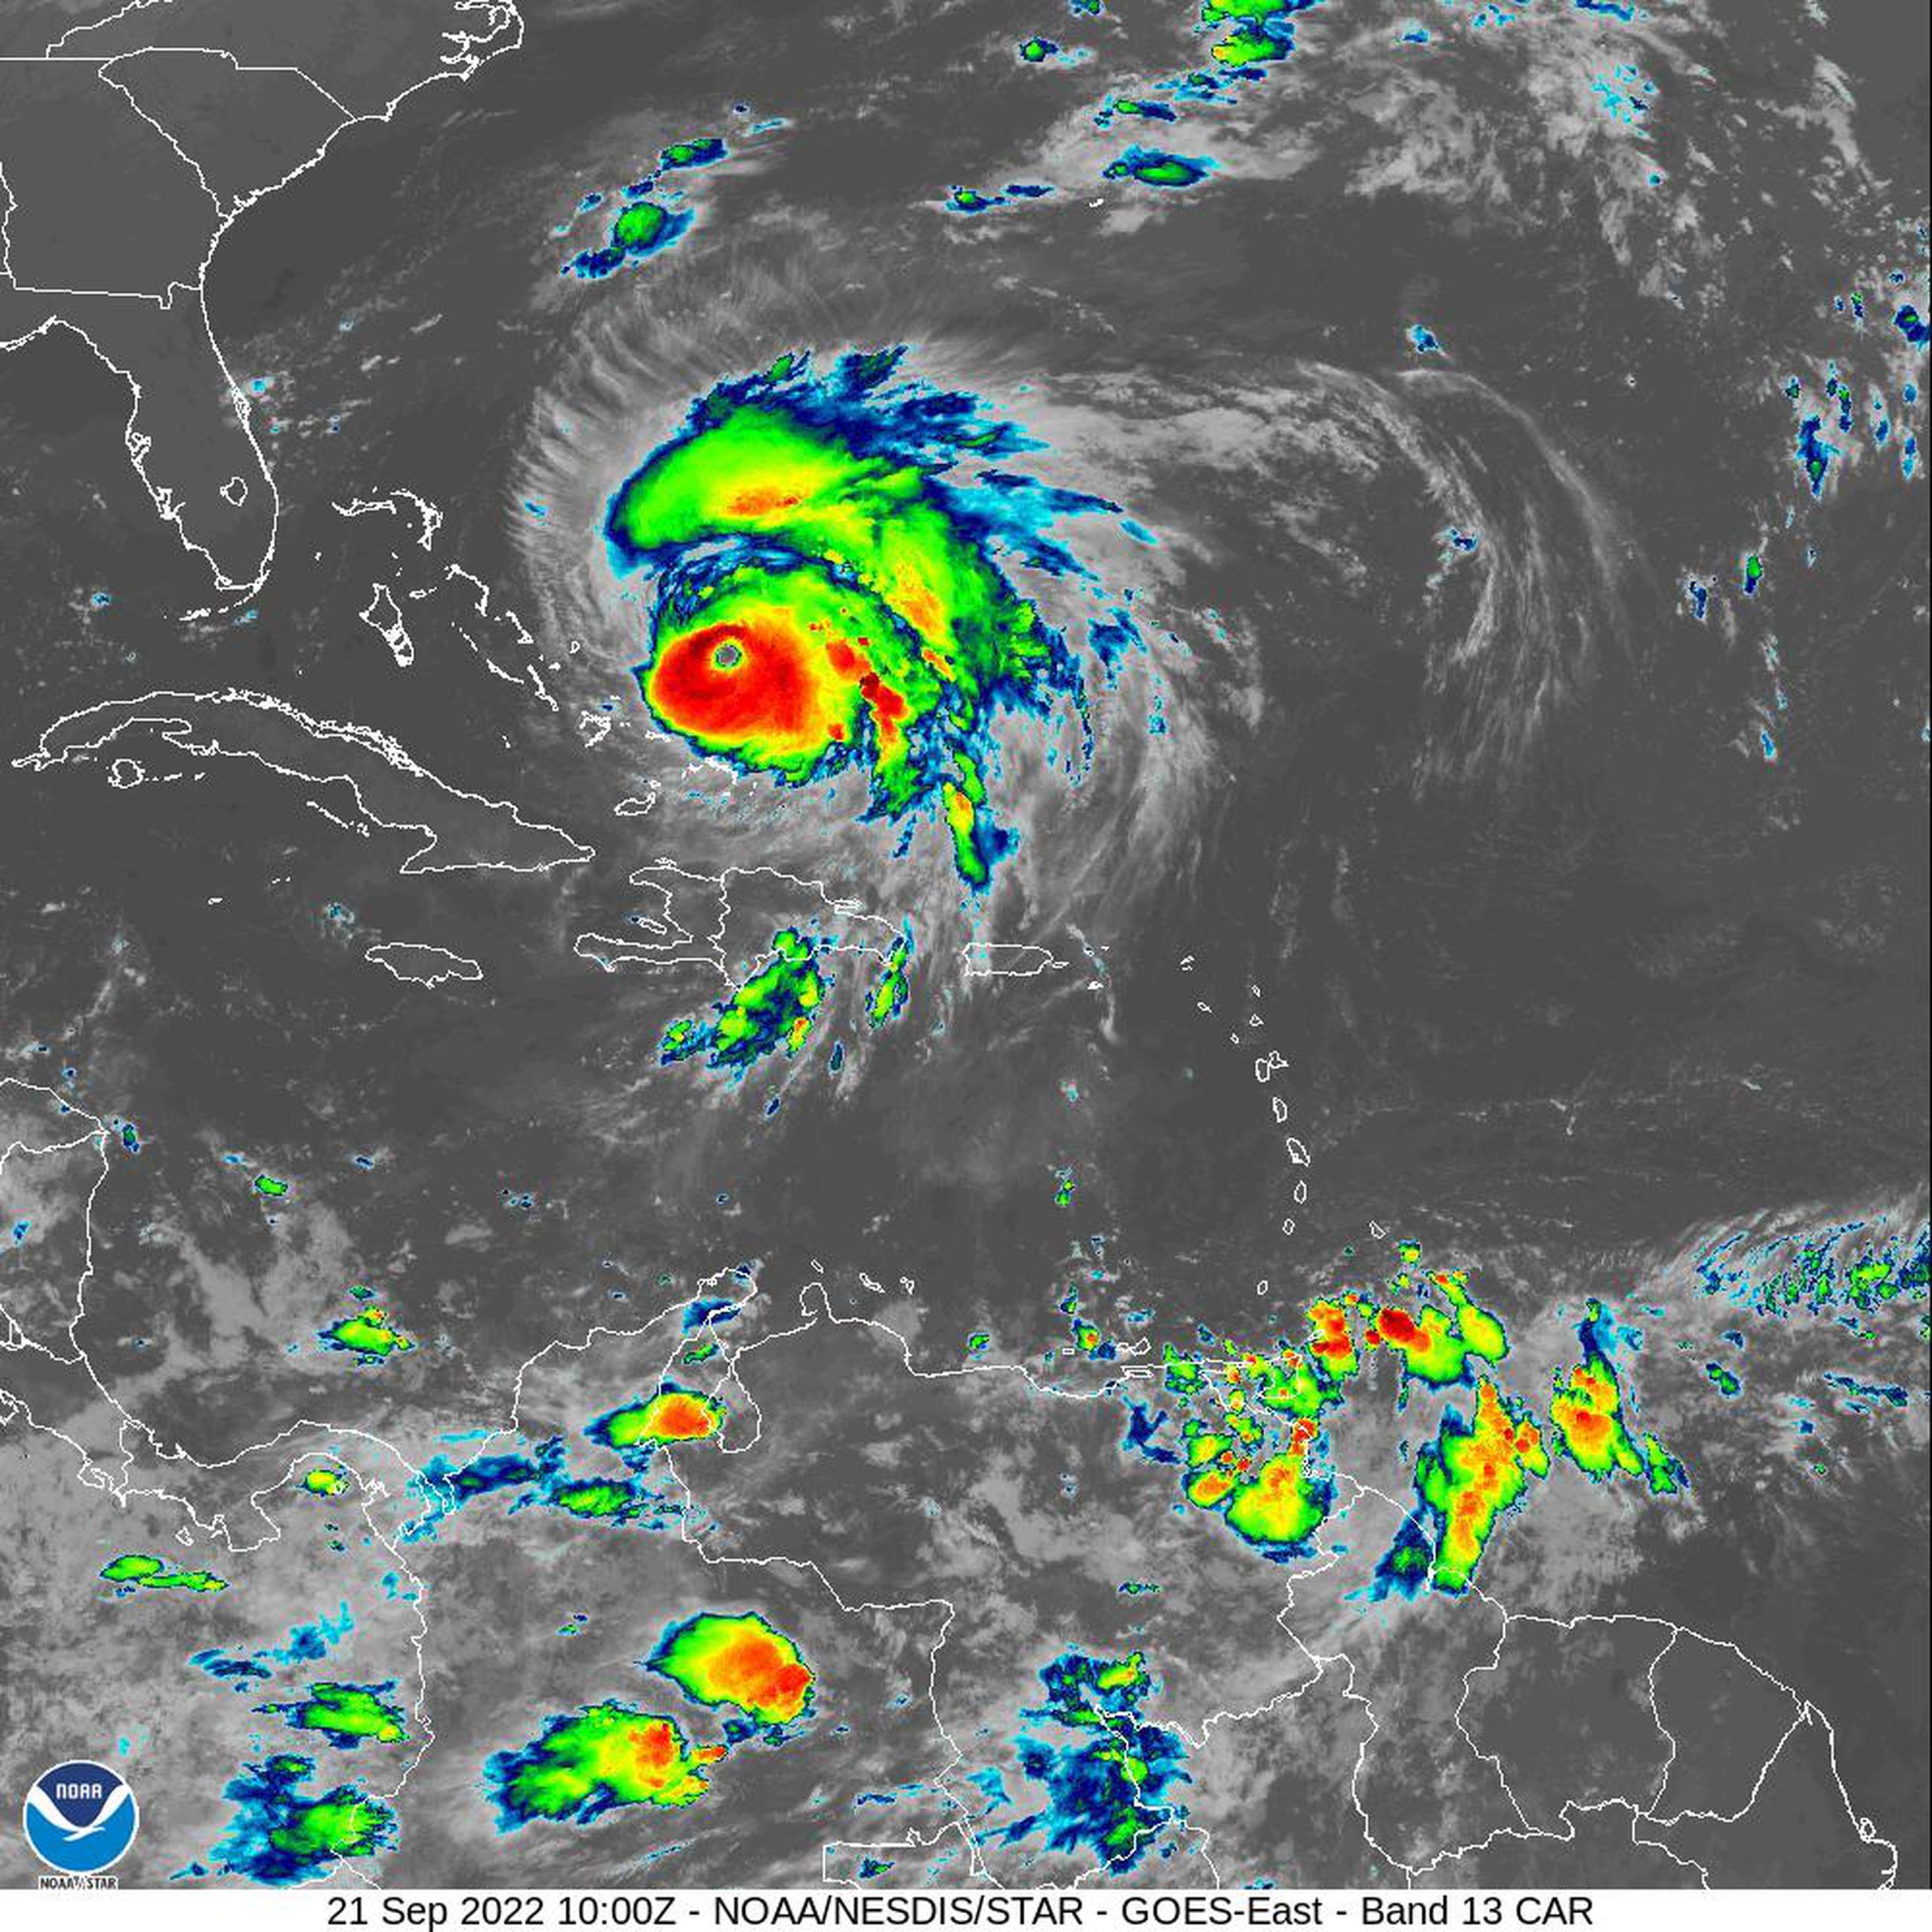 Imagen de satélite donde se observa la onda tropical al este de las Islas de Barlovento y el huracán Fiona al norte de La Española.